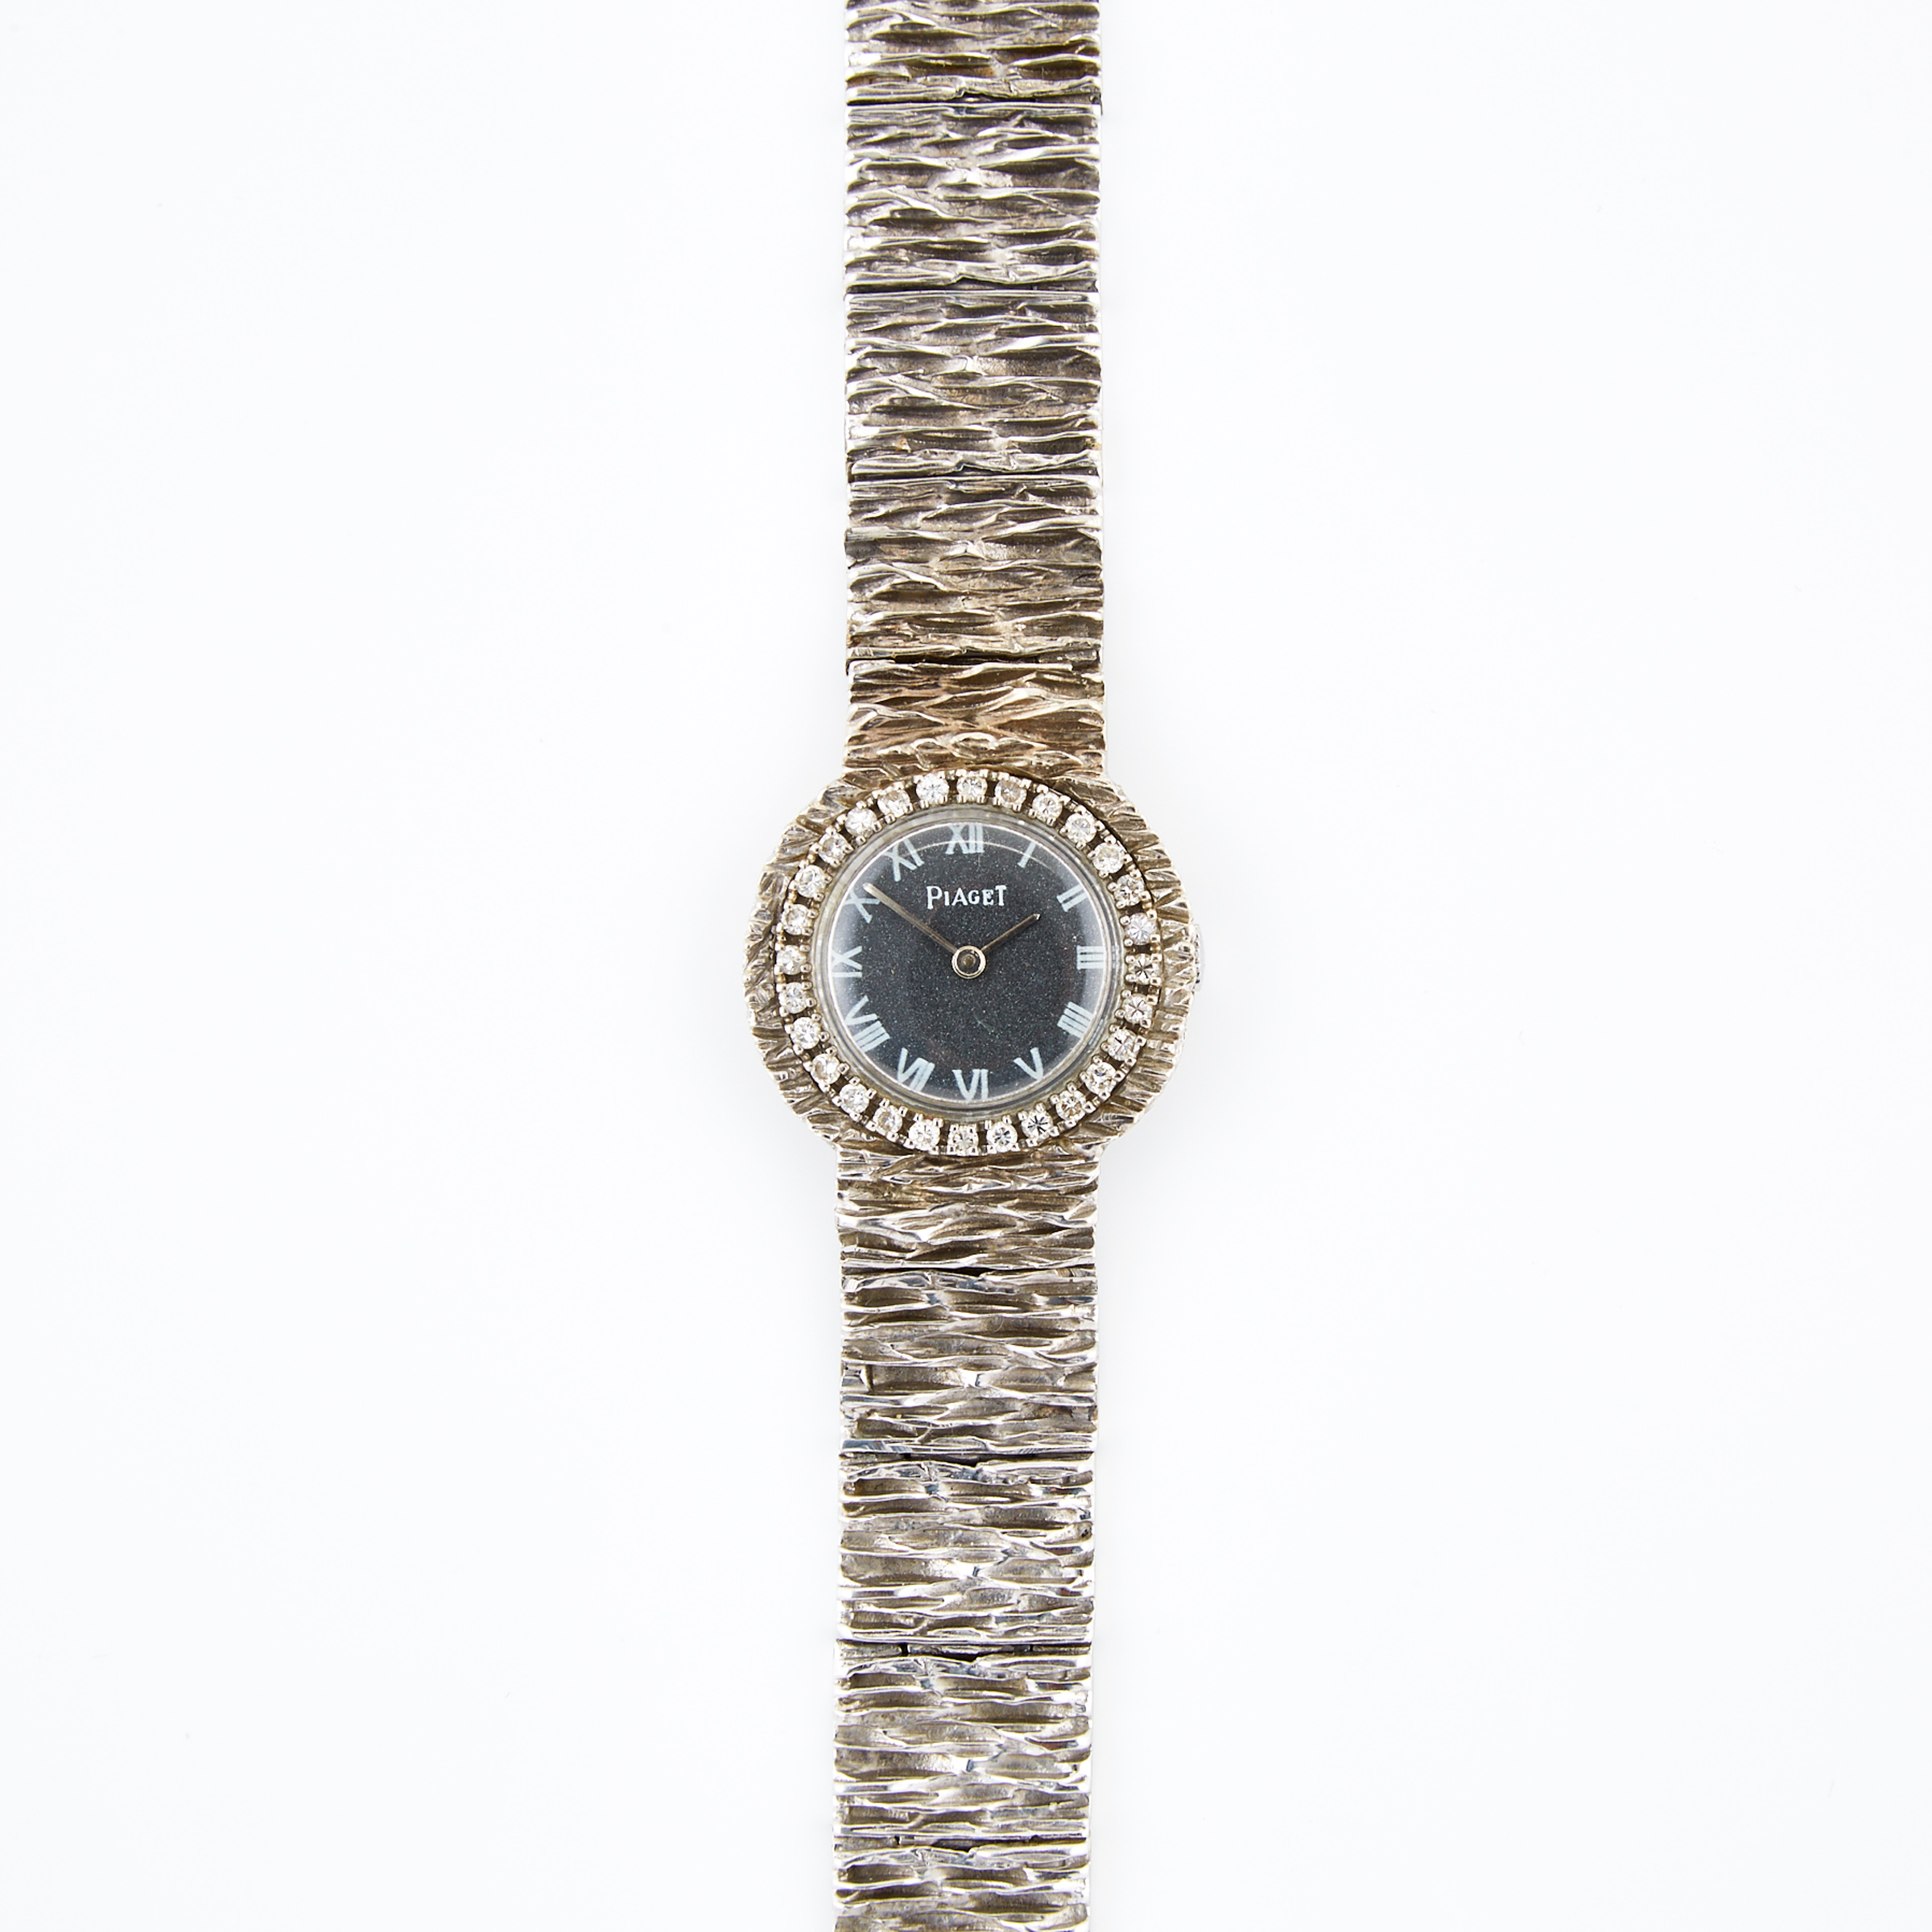 Lady’s Piaget Wristwatch